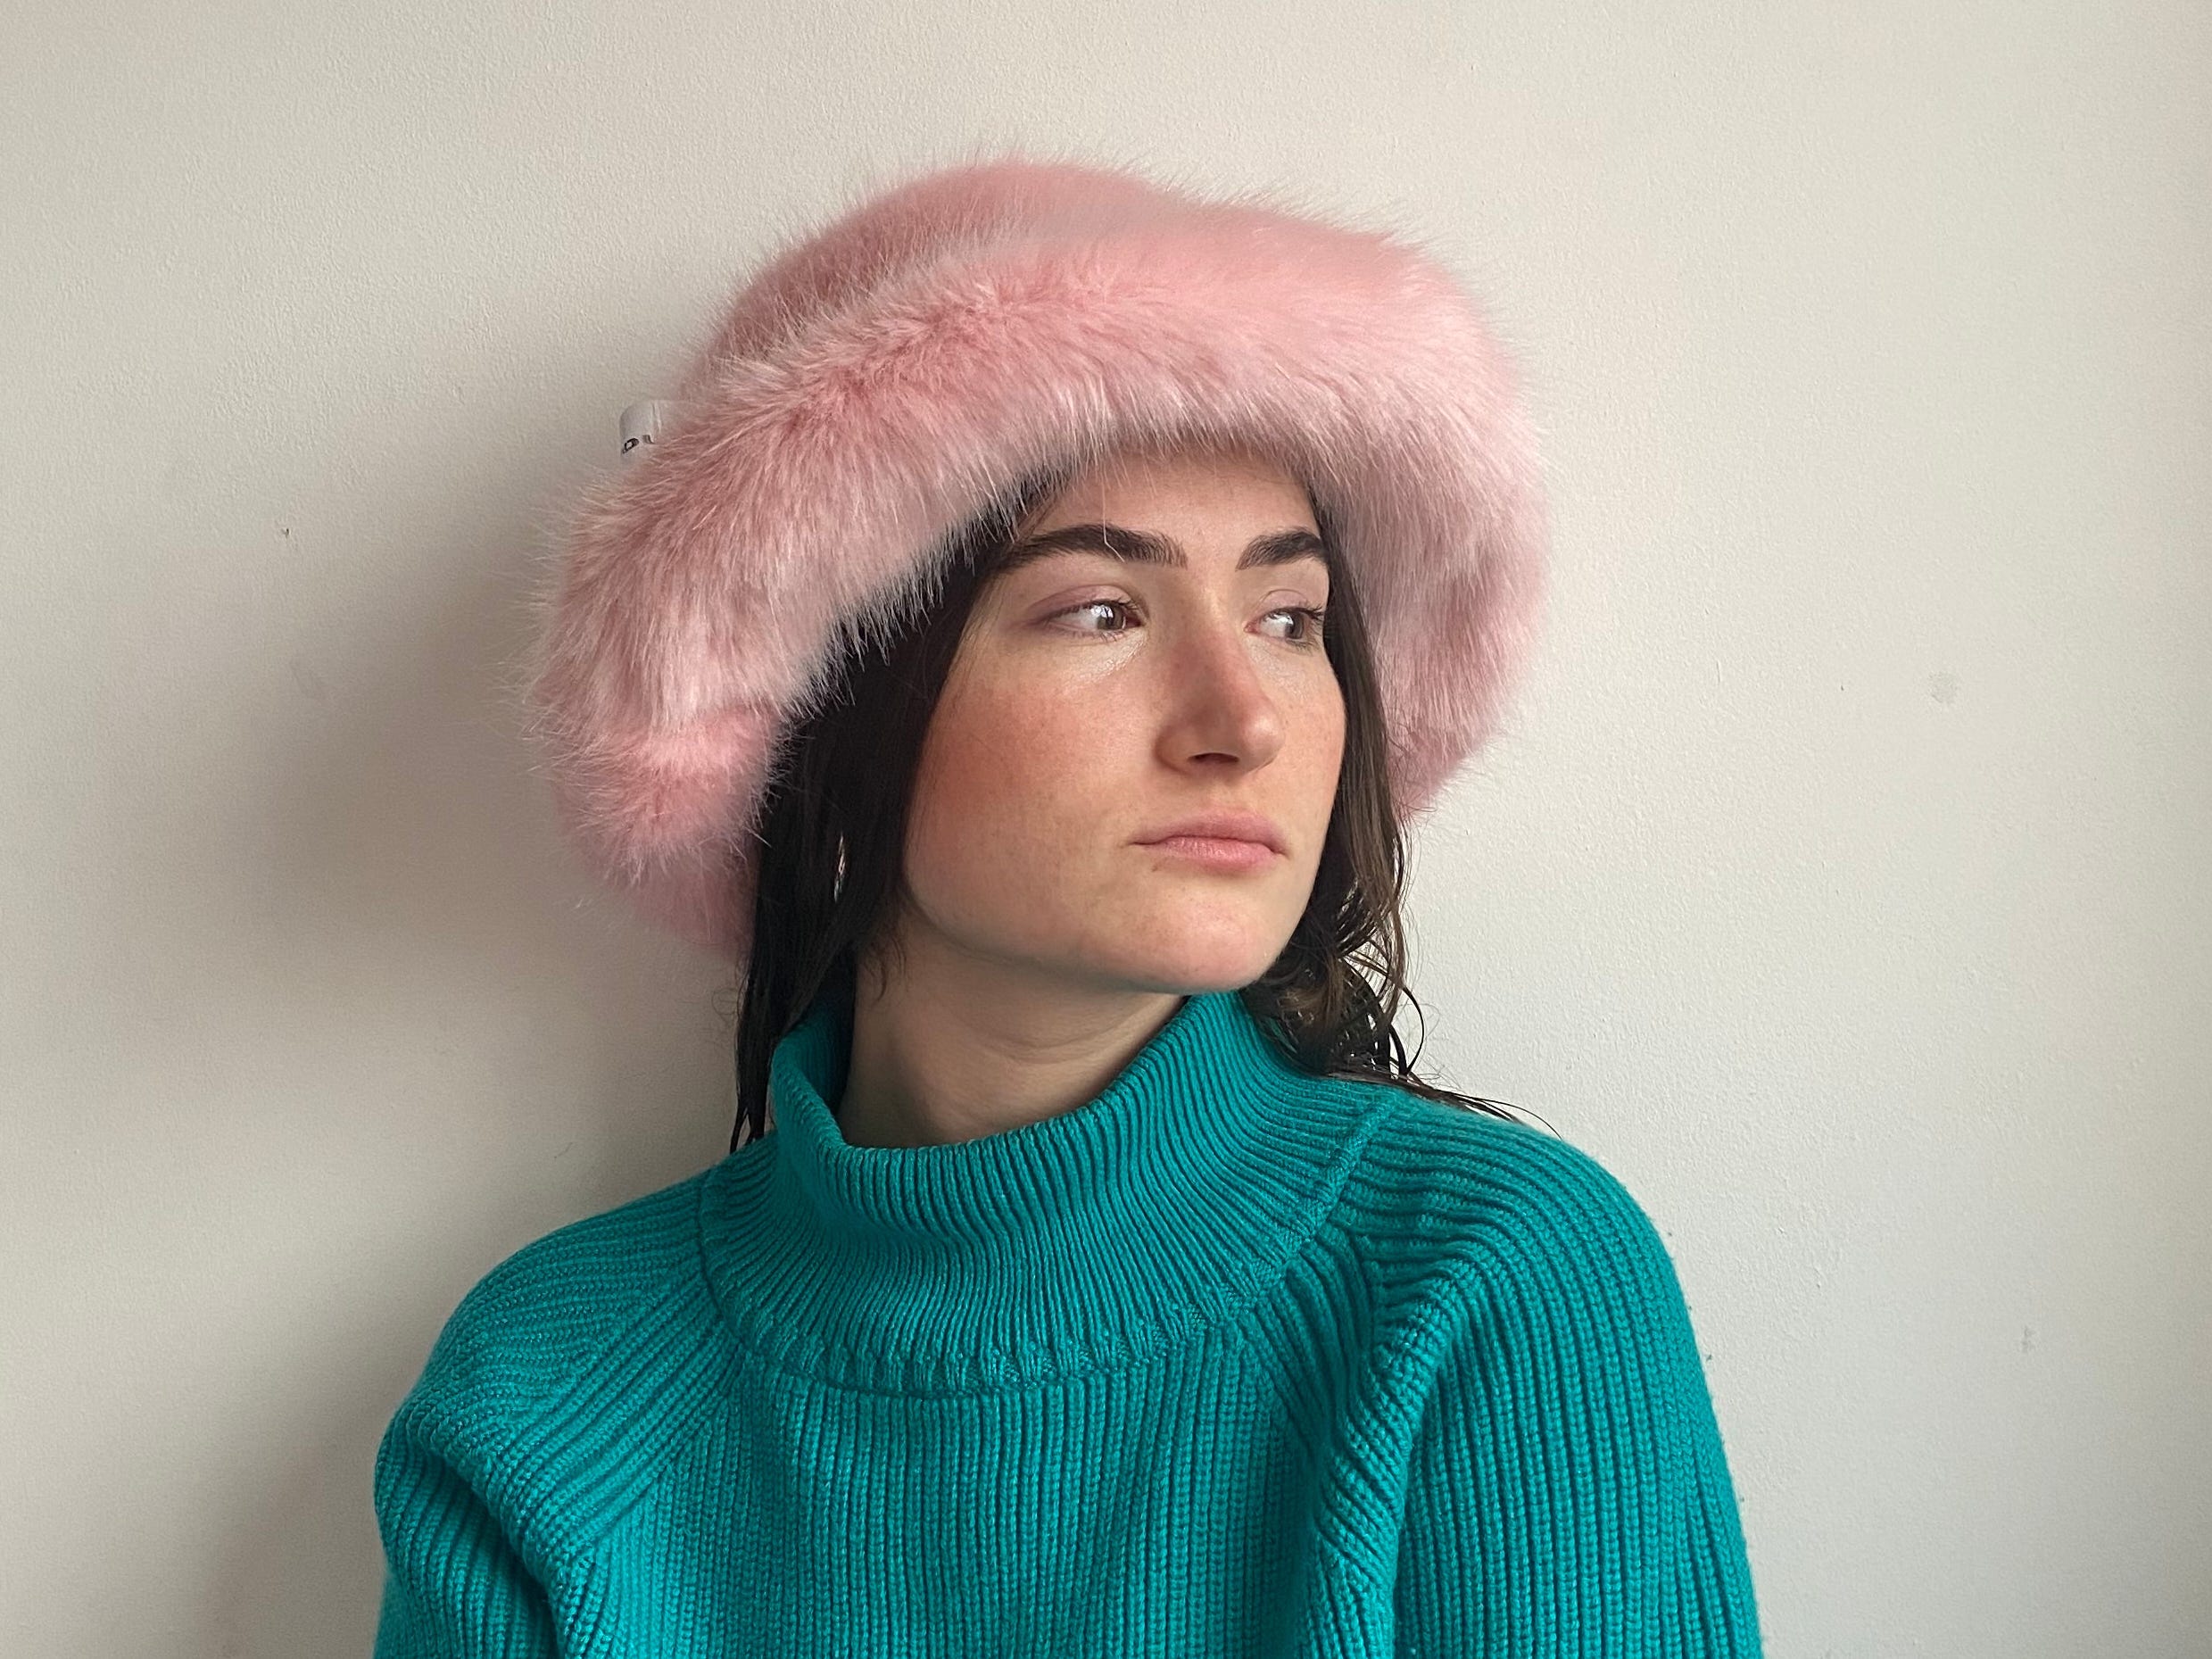 Ashleigh Dickinson fertigte diesen flauschigen rosa Hut.